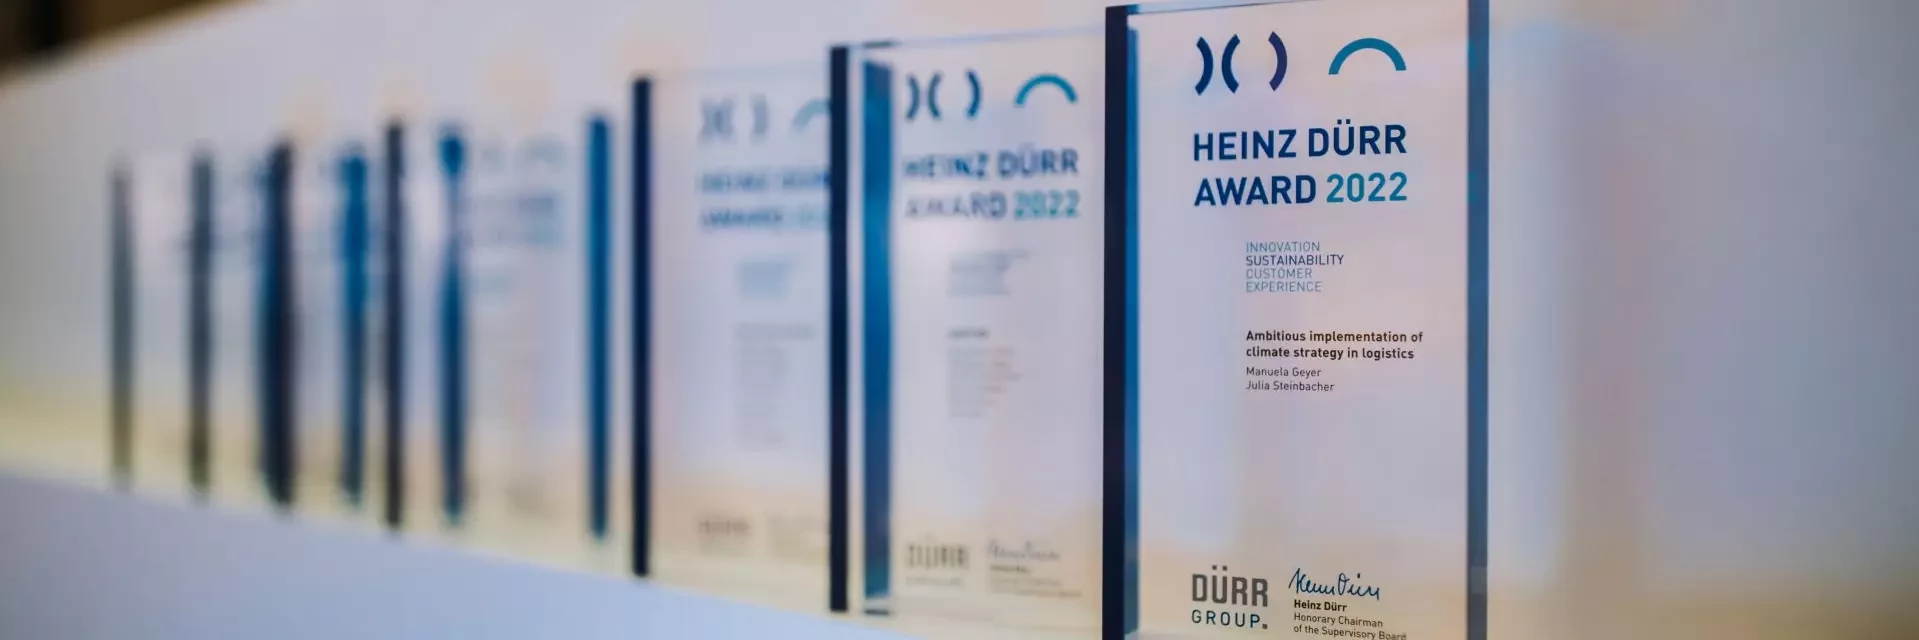 Heinz Dürr Award 2022